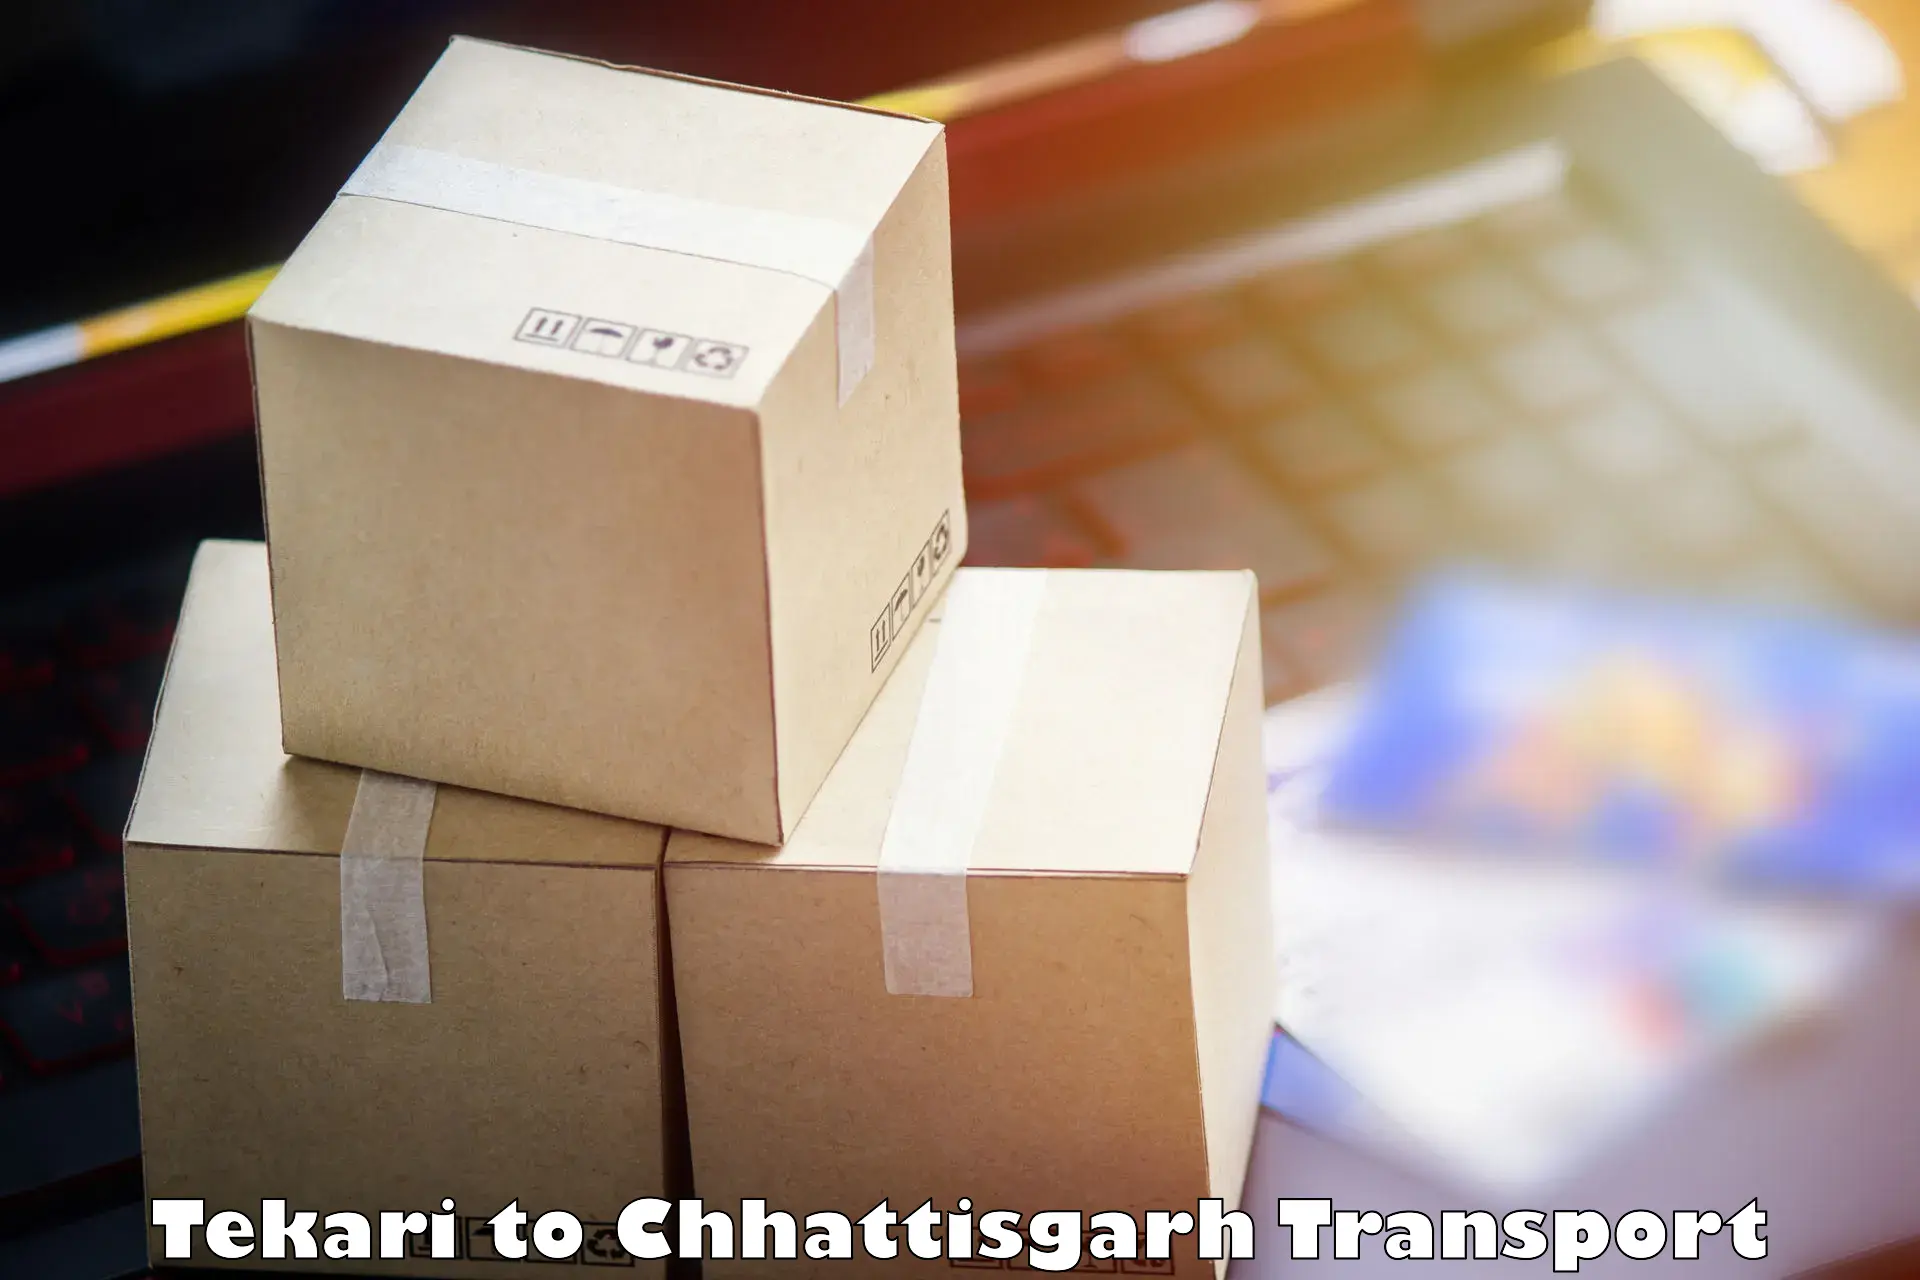 Commercial transport service Tekari to Chhattisgarh